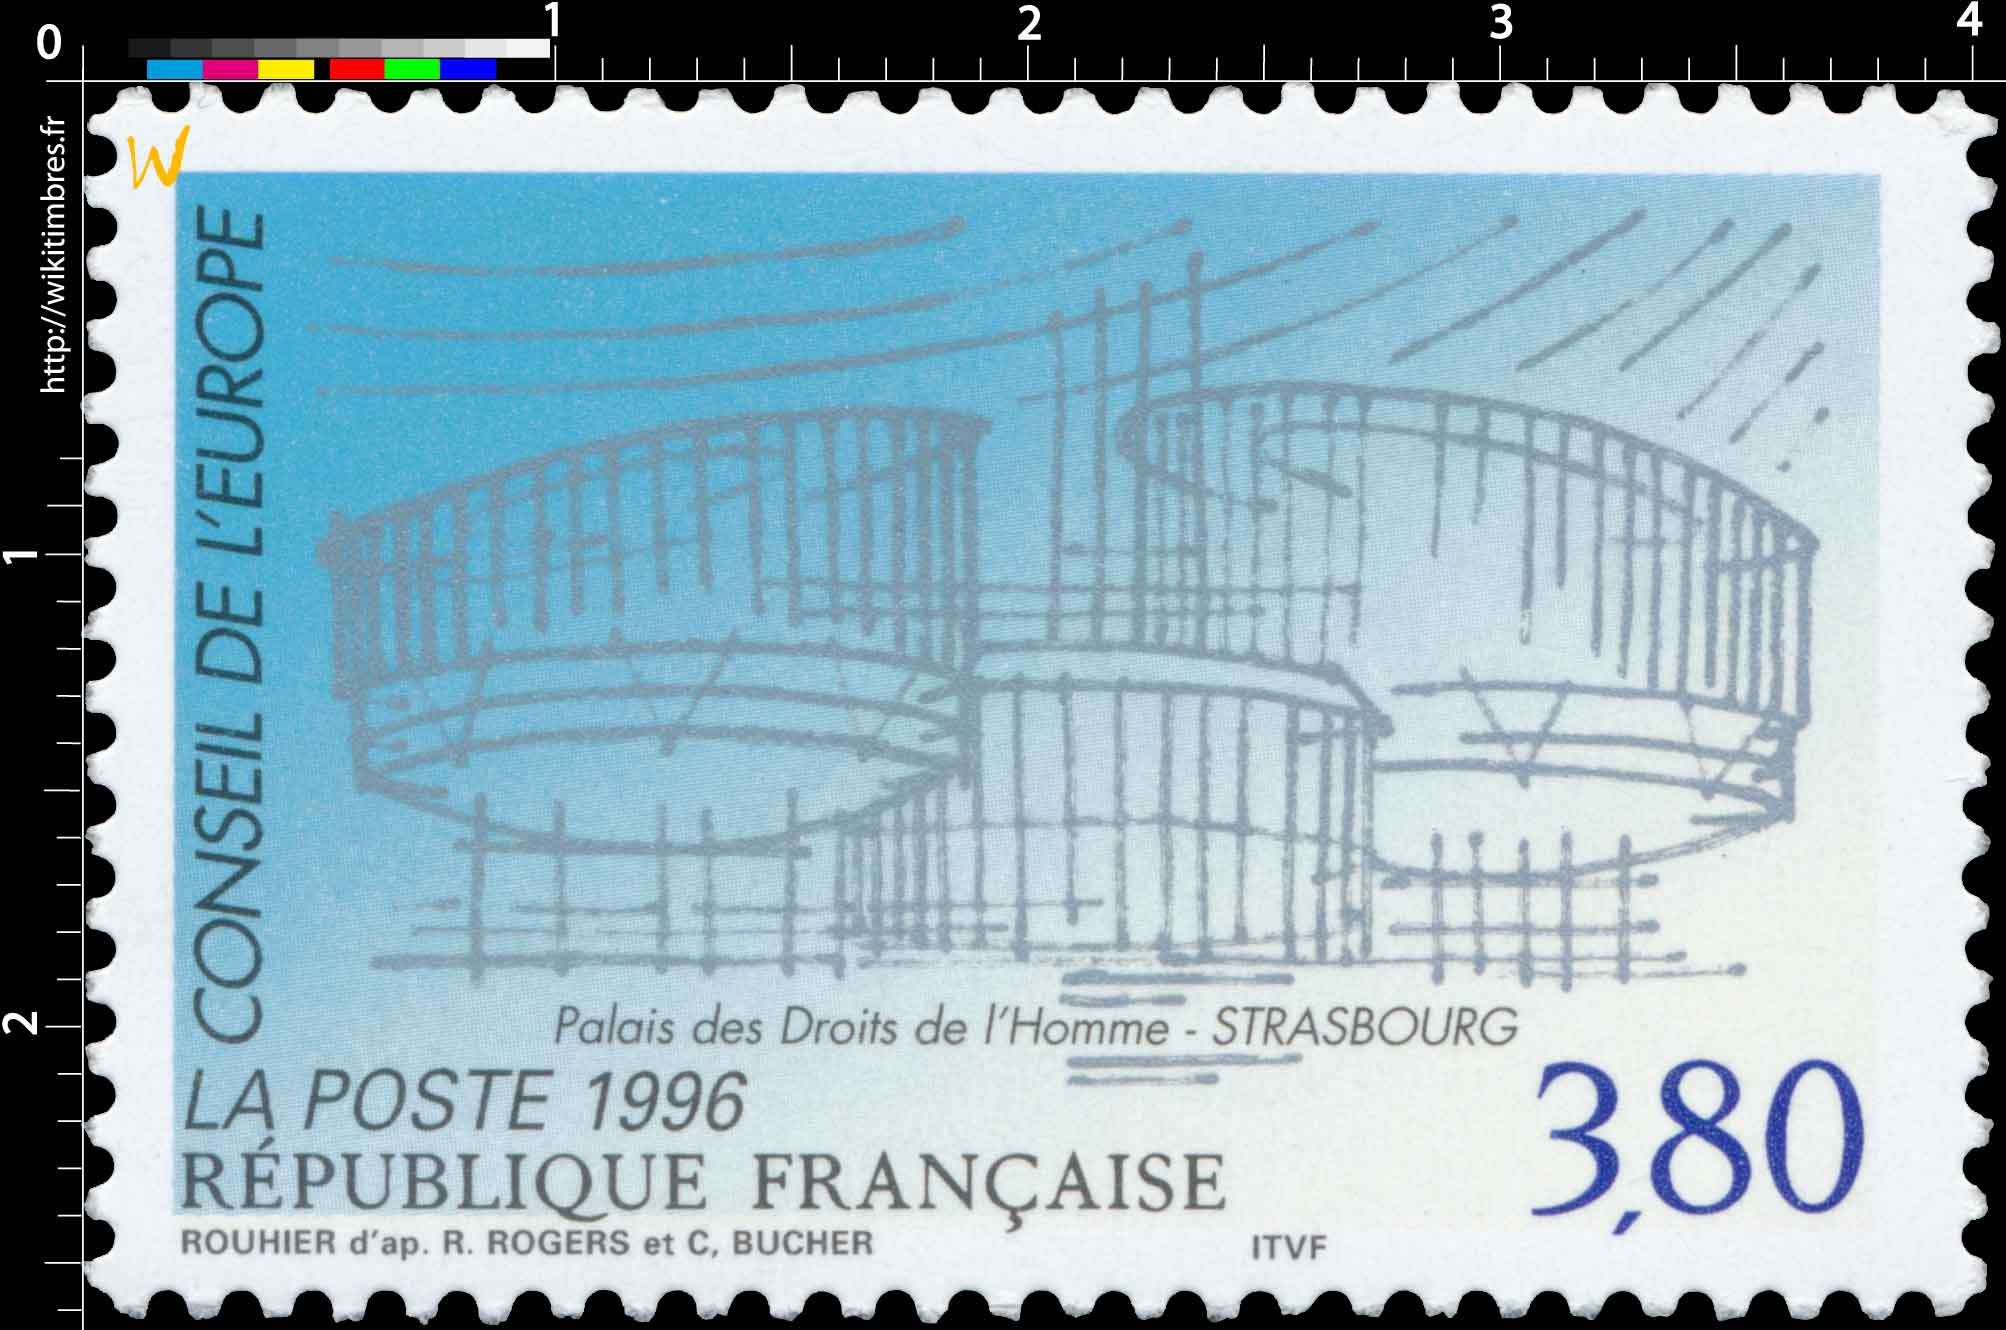 1996 CONSEIL DE L'EUROPE Palais de Droits de l'Homme - Strasbourg